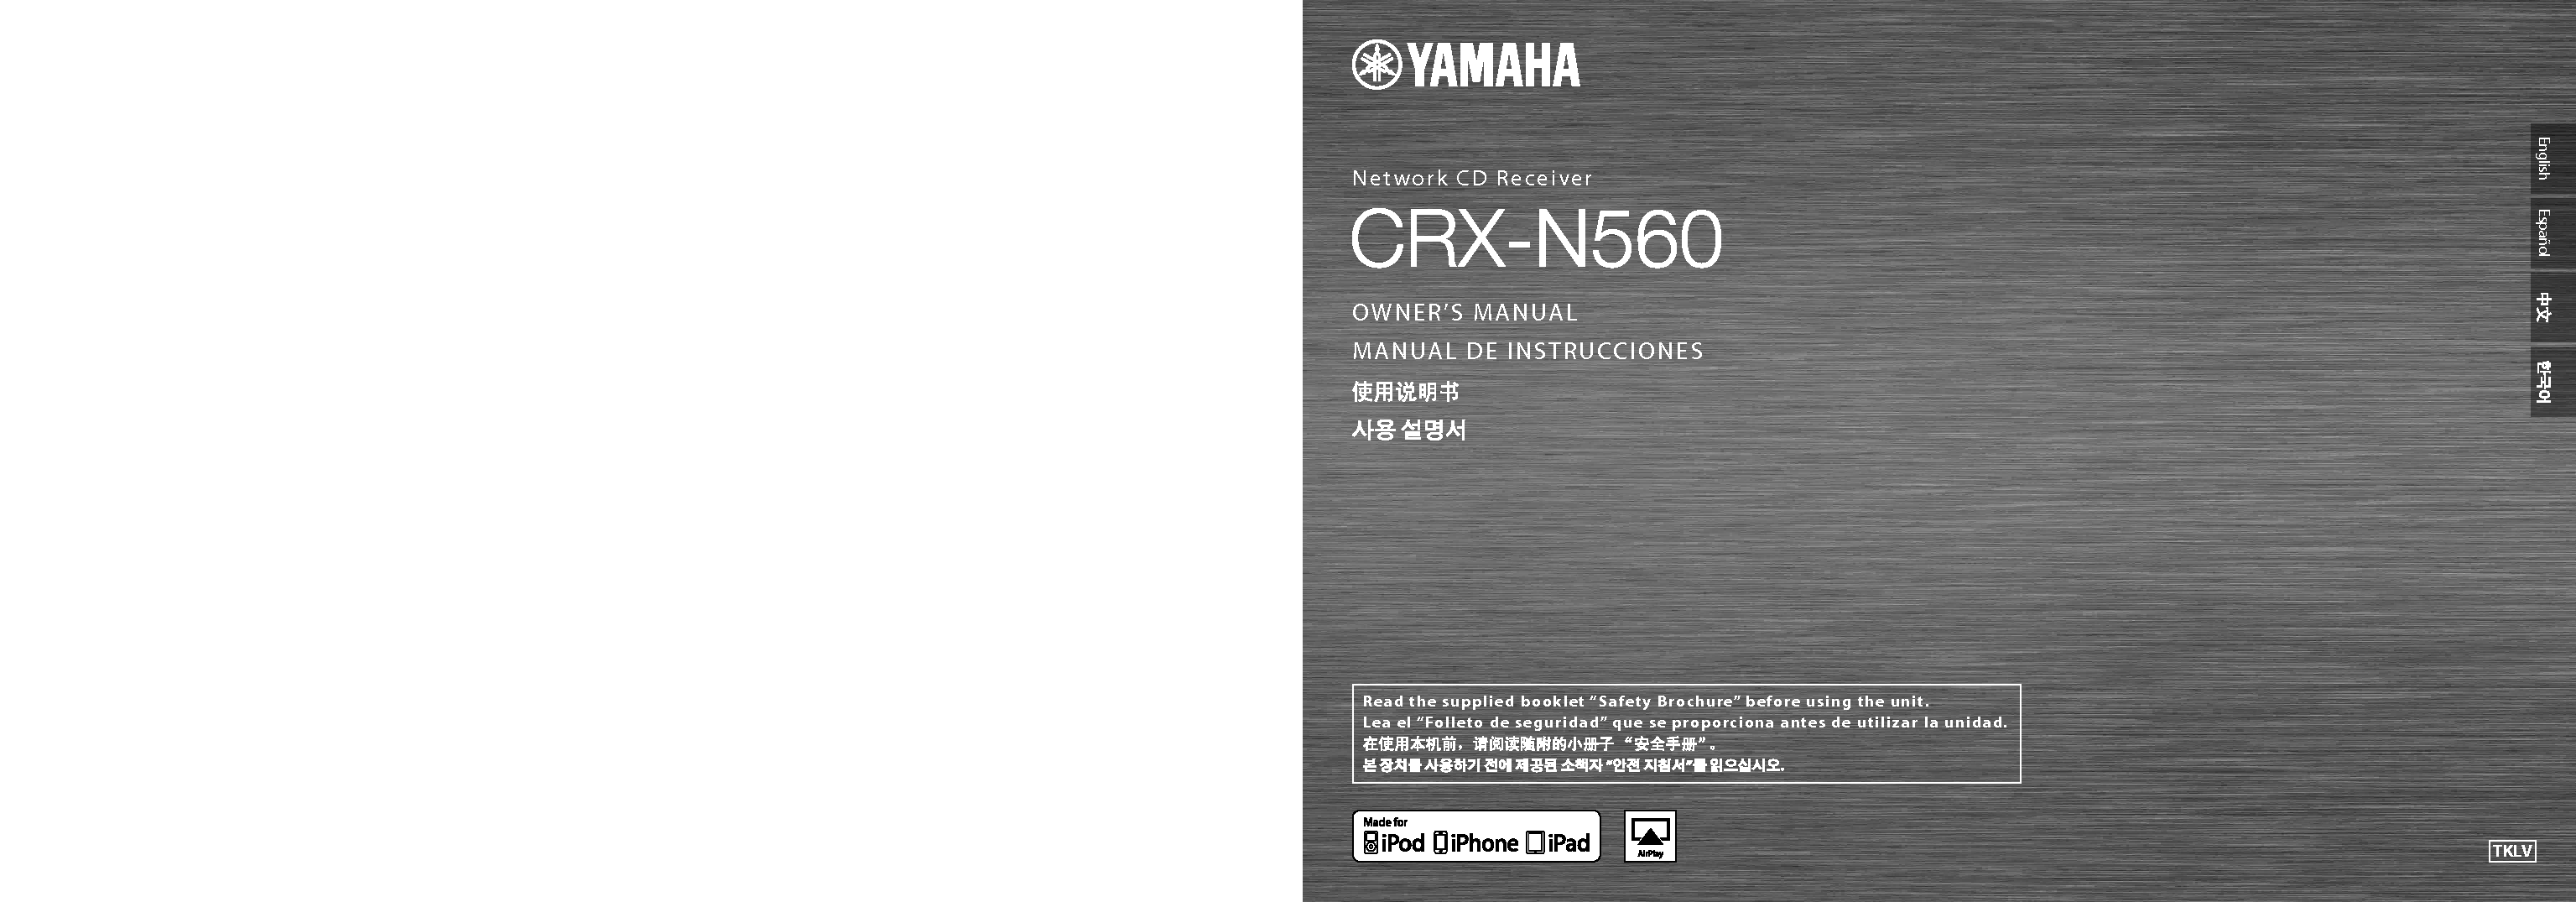 雅马哈 Yamaha CRX-N560 使用说明书 封面